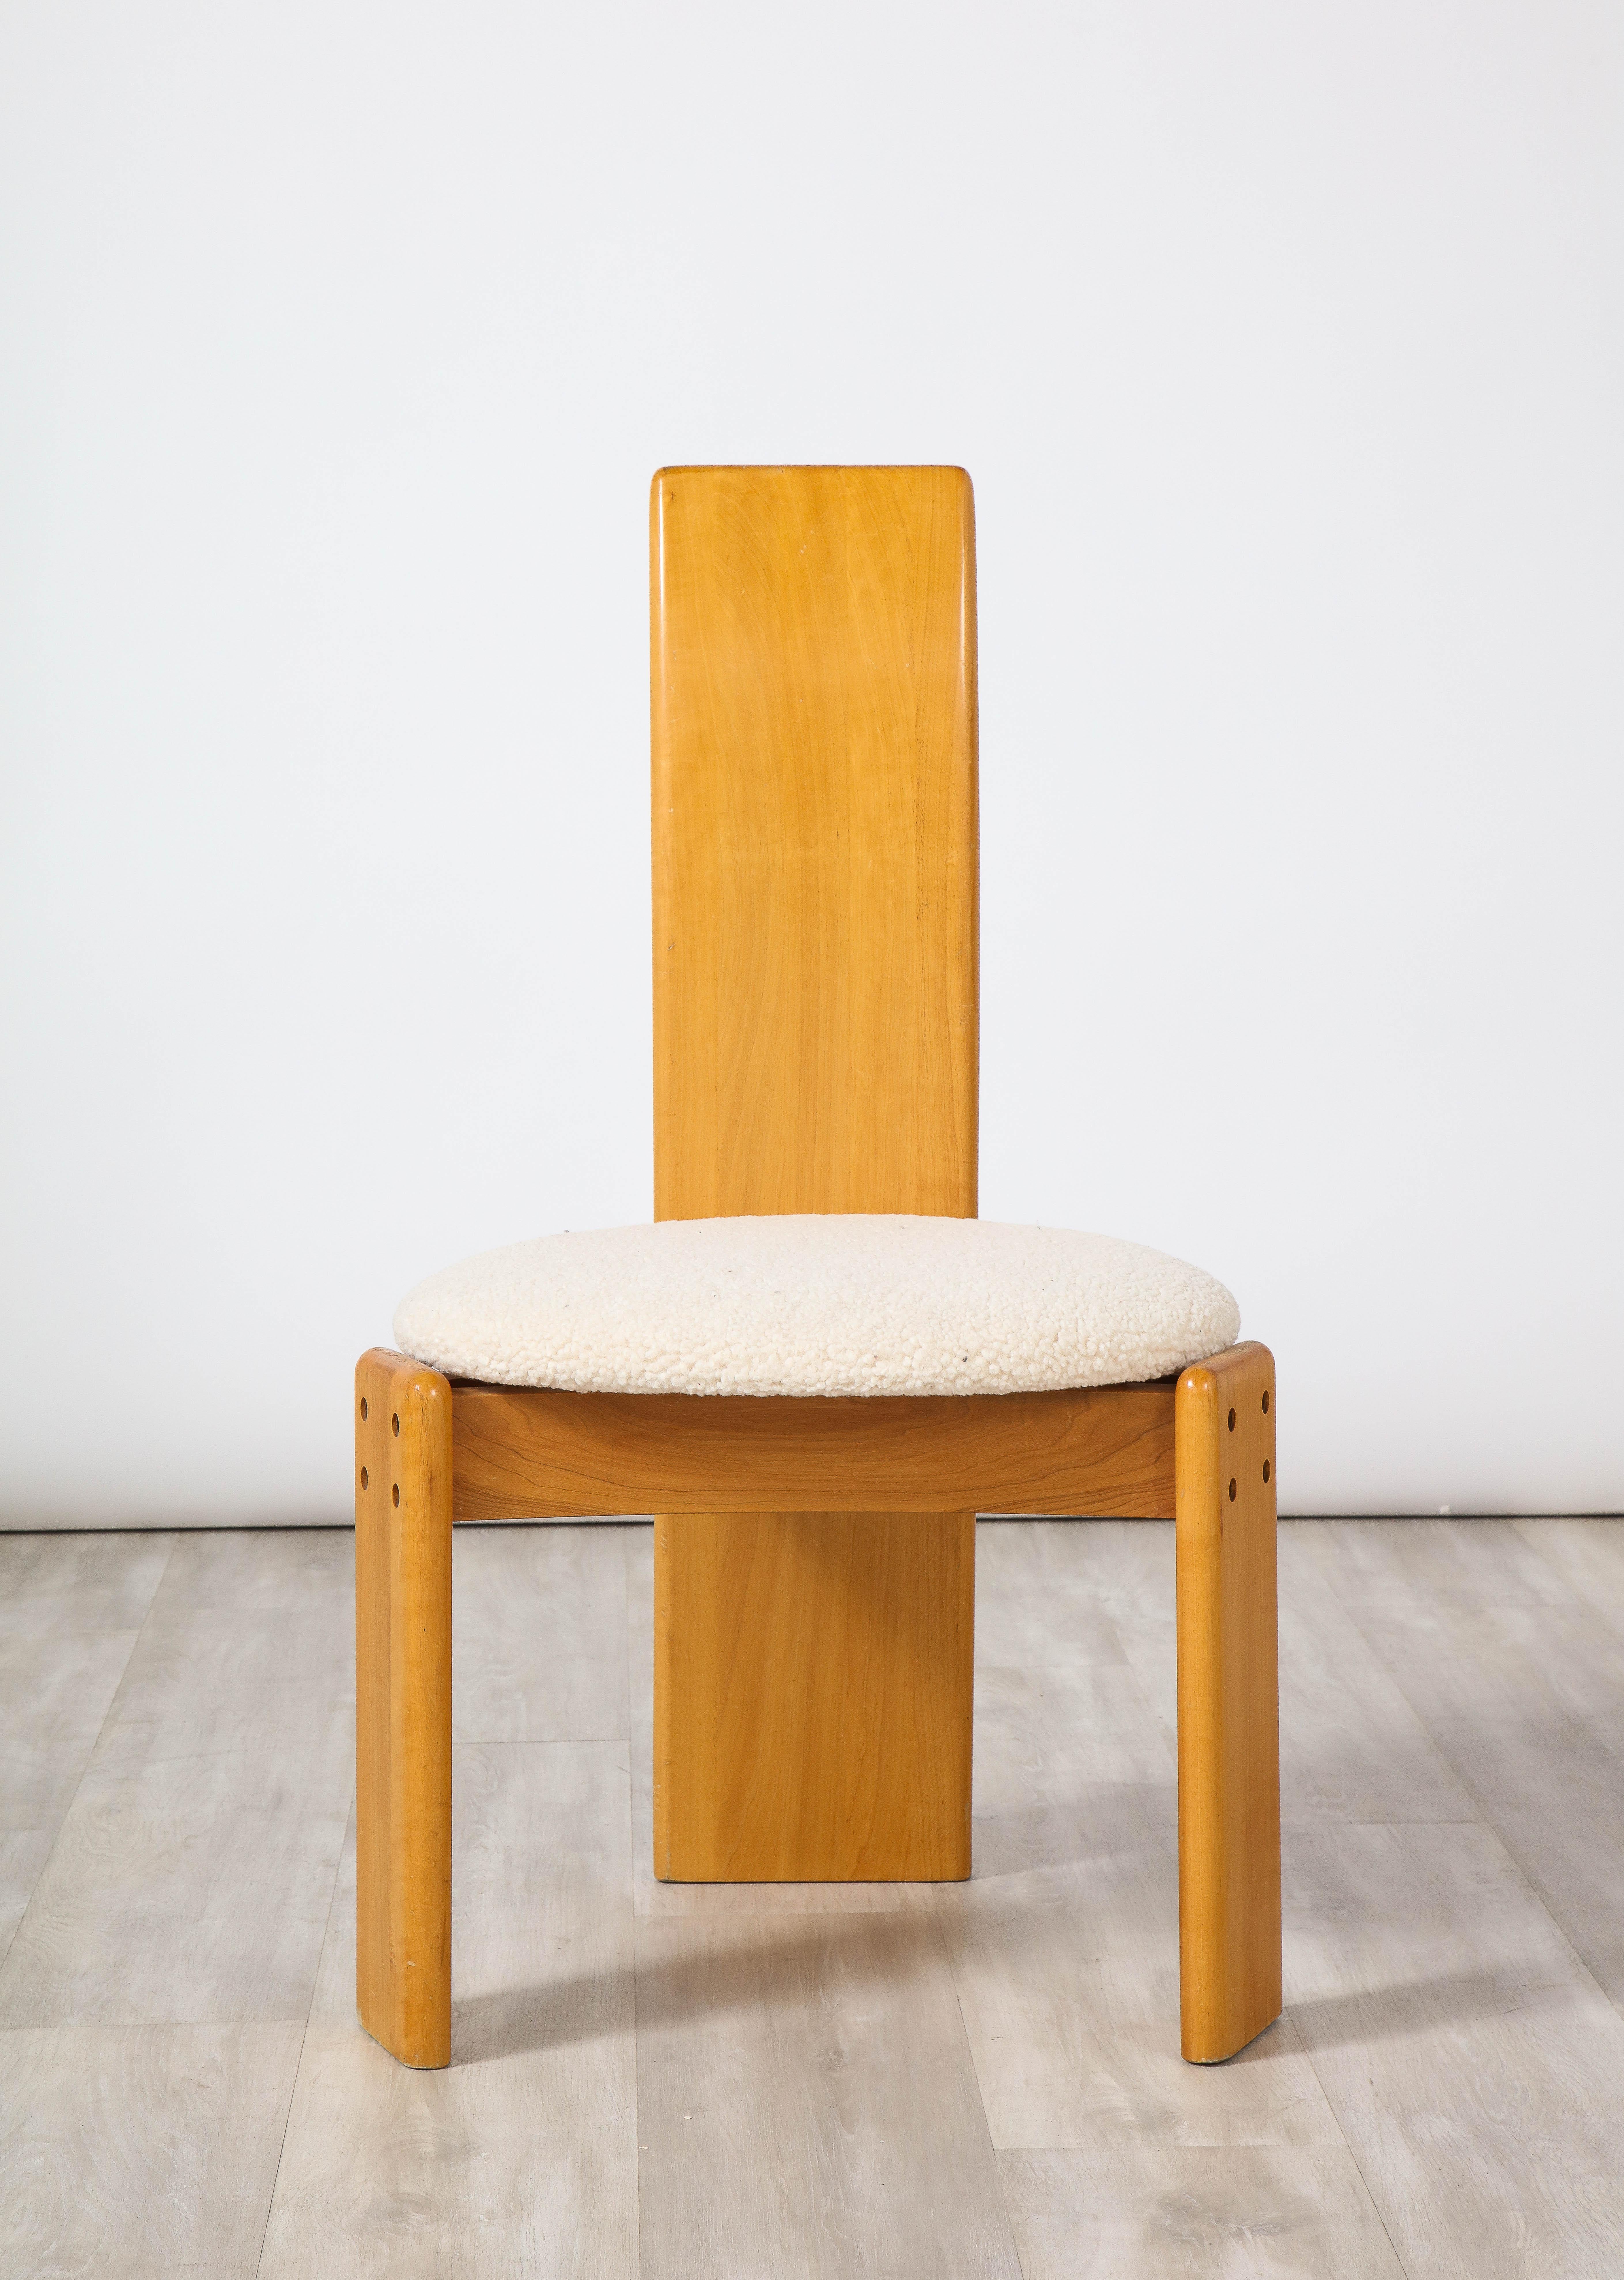 Ensemble de quatre chaises de salle à manger en bois d'érable et boucle magnifiquement sculptées, conçues par Afra et Tobia Scarpa. Le dossier est élégamment étroit et descend jusqu'au sol, avec une base triangulaire qui soutient l'assise